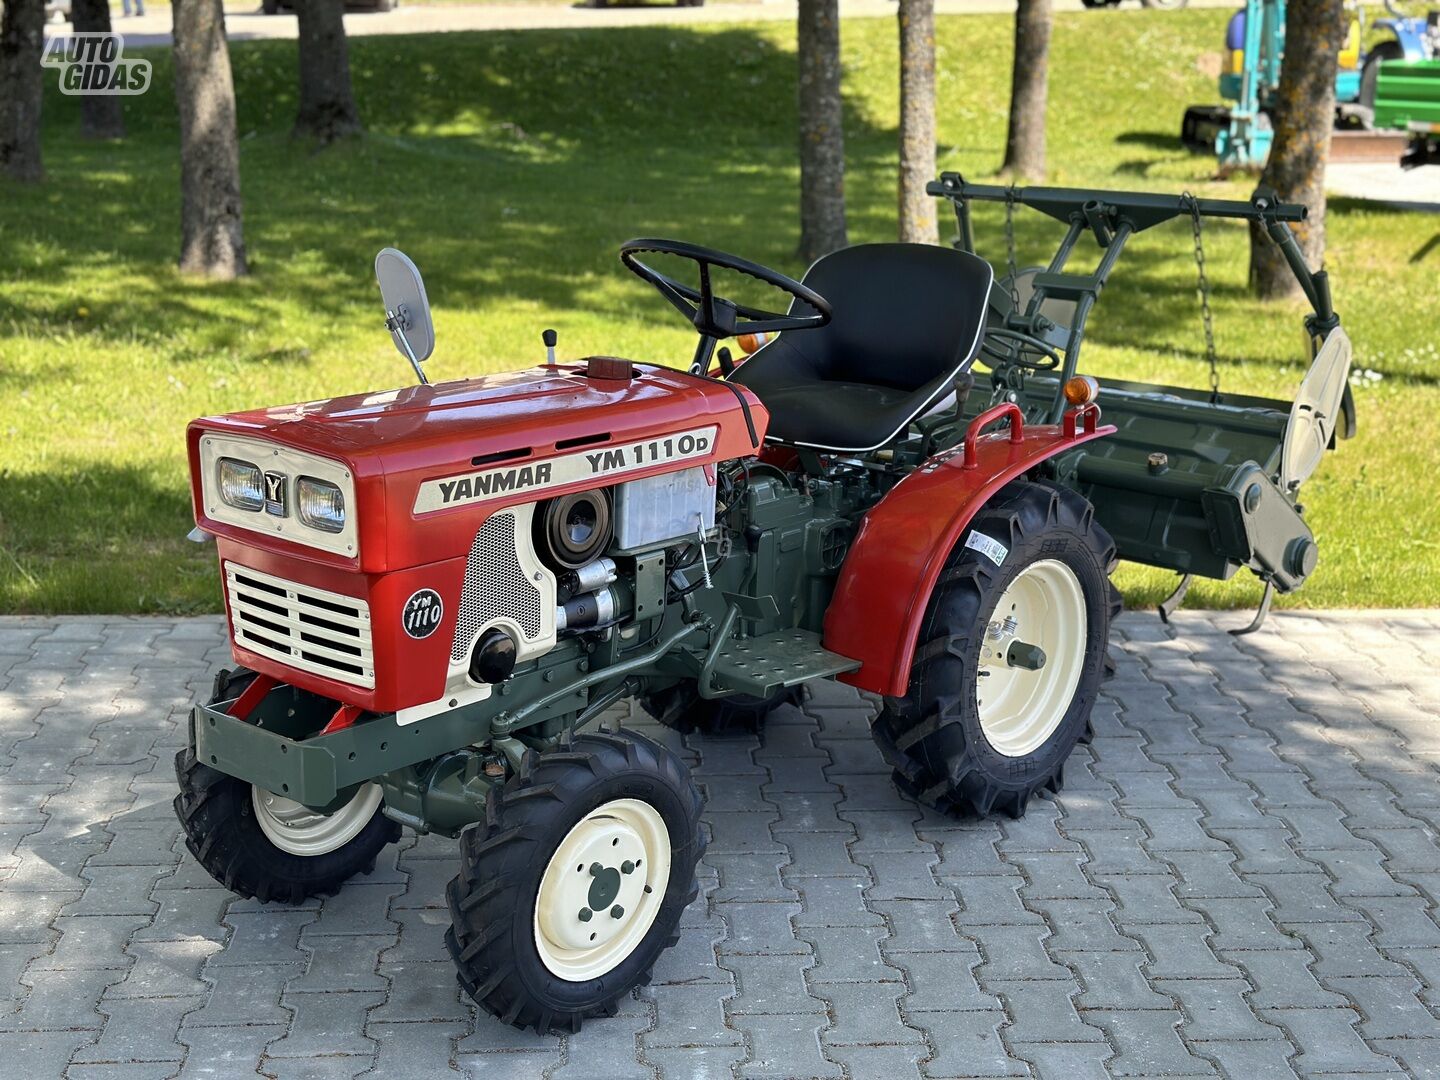 Yanmar YM-1110 1982 y Tractor